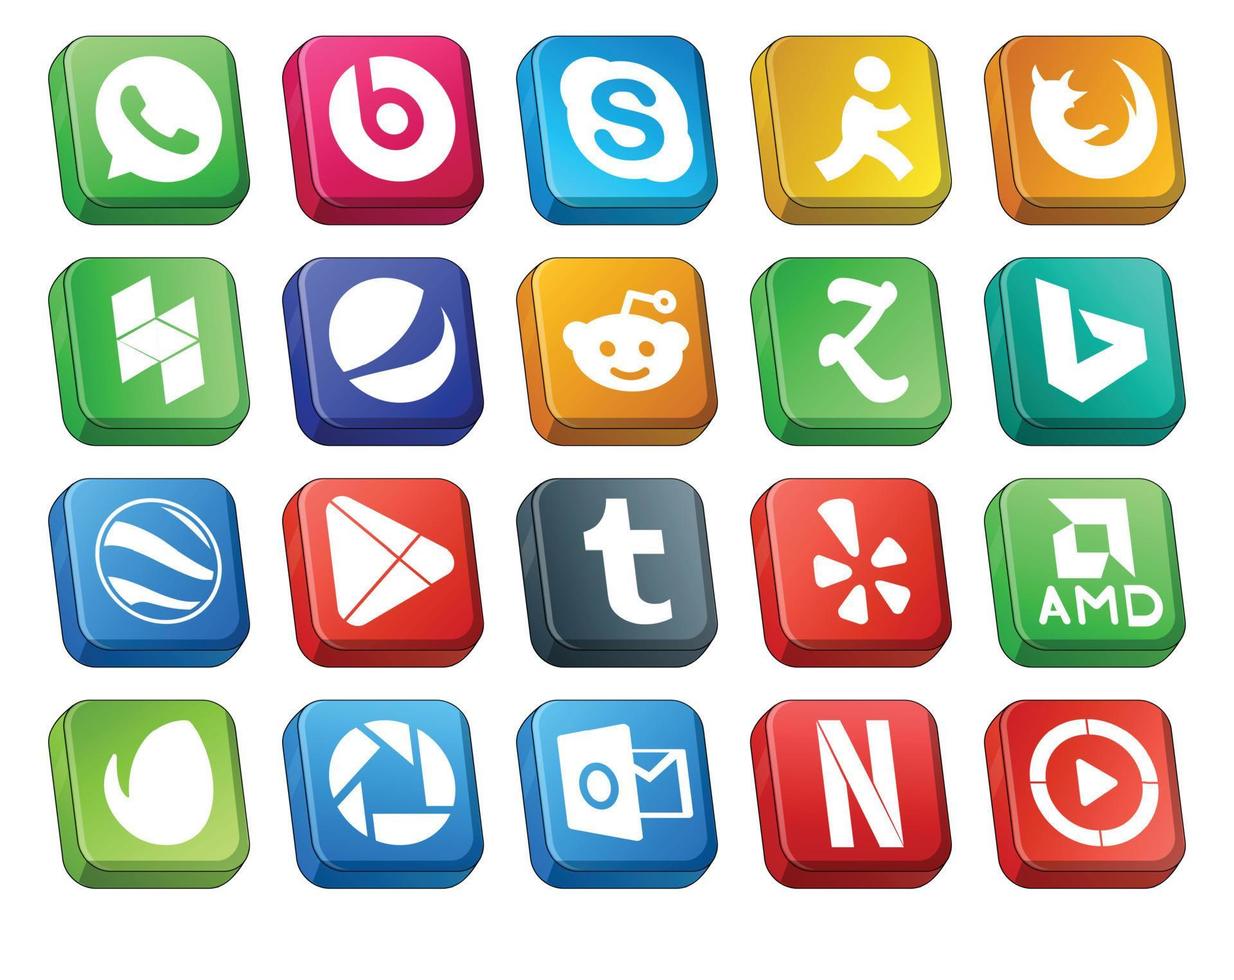 20 paquetes de íconos de redes sociales que incluyen amd tumblr pepsi apps google earth vector